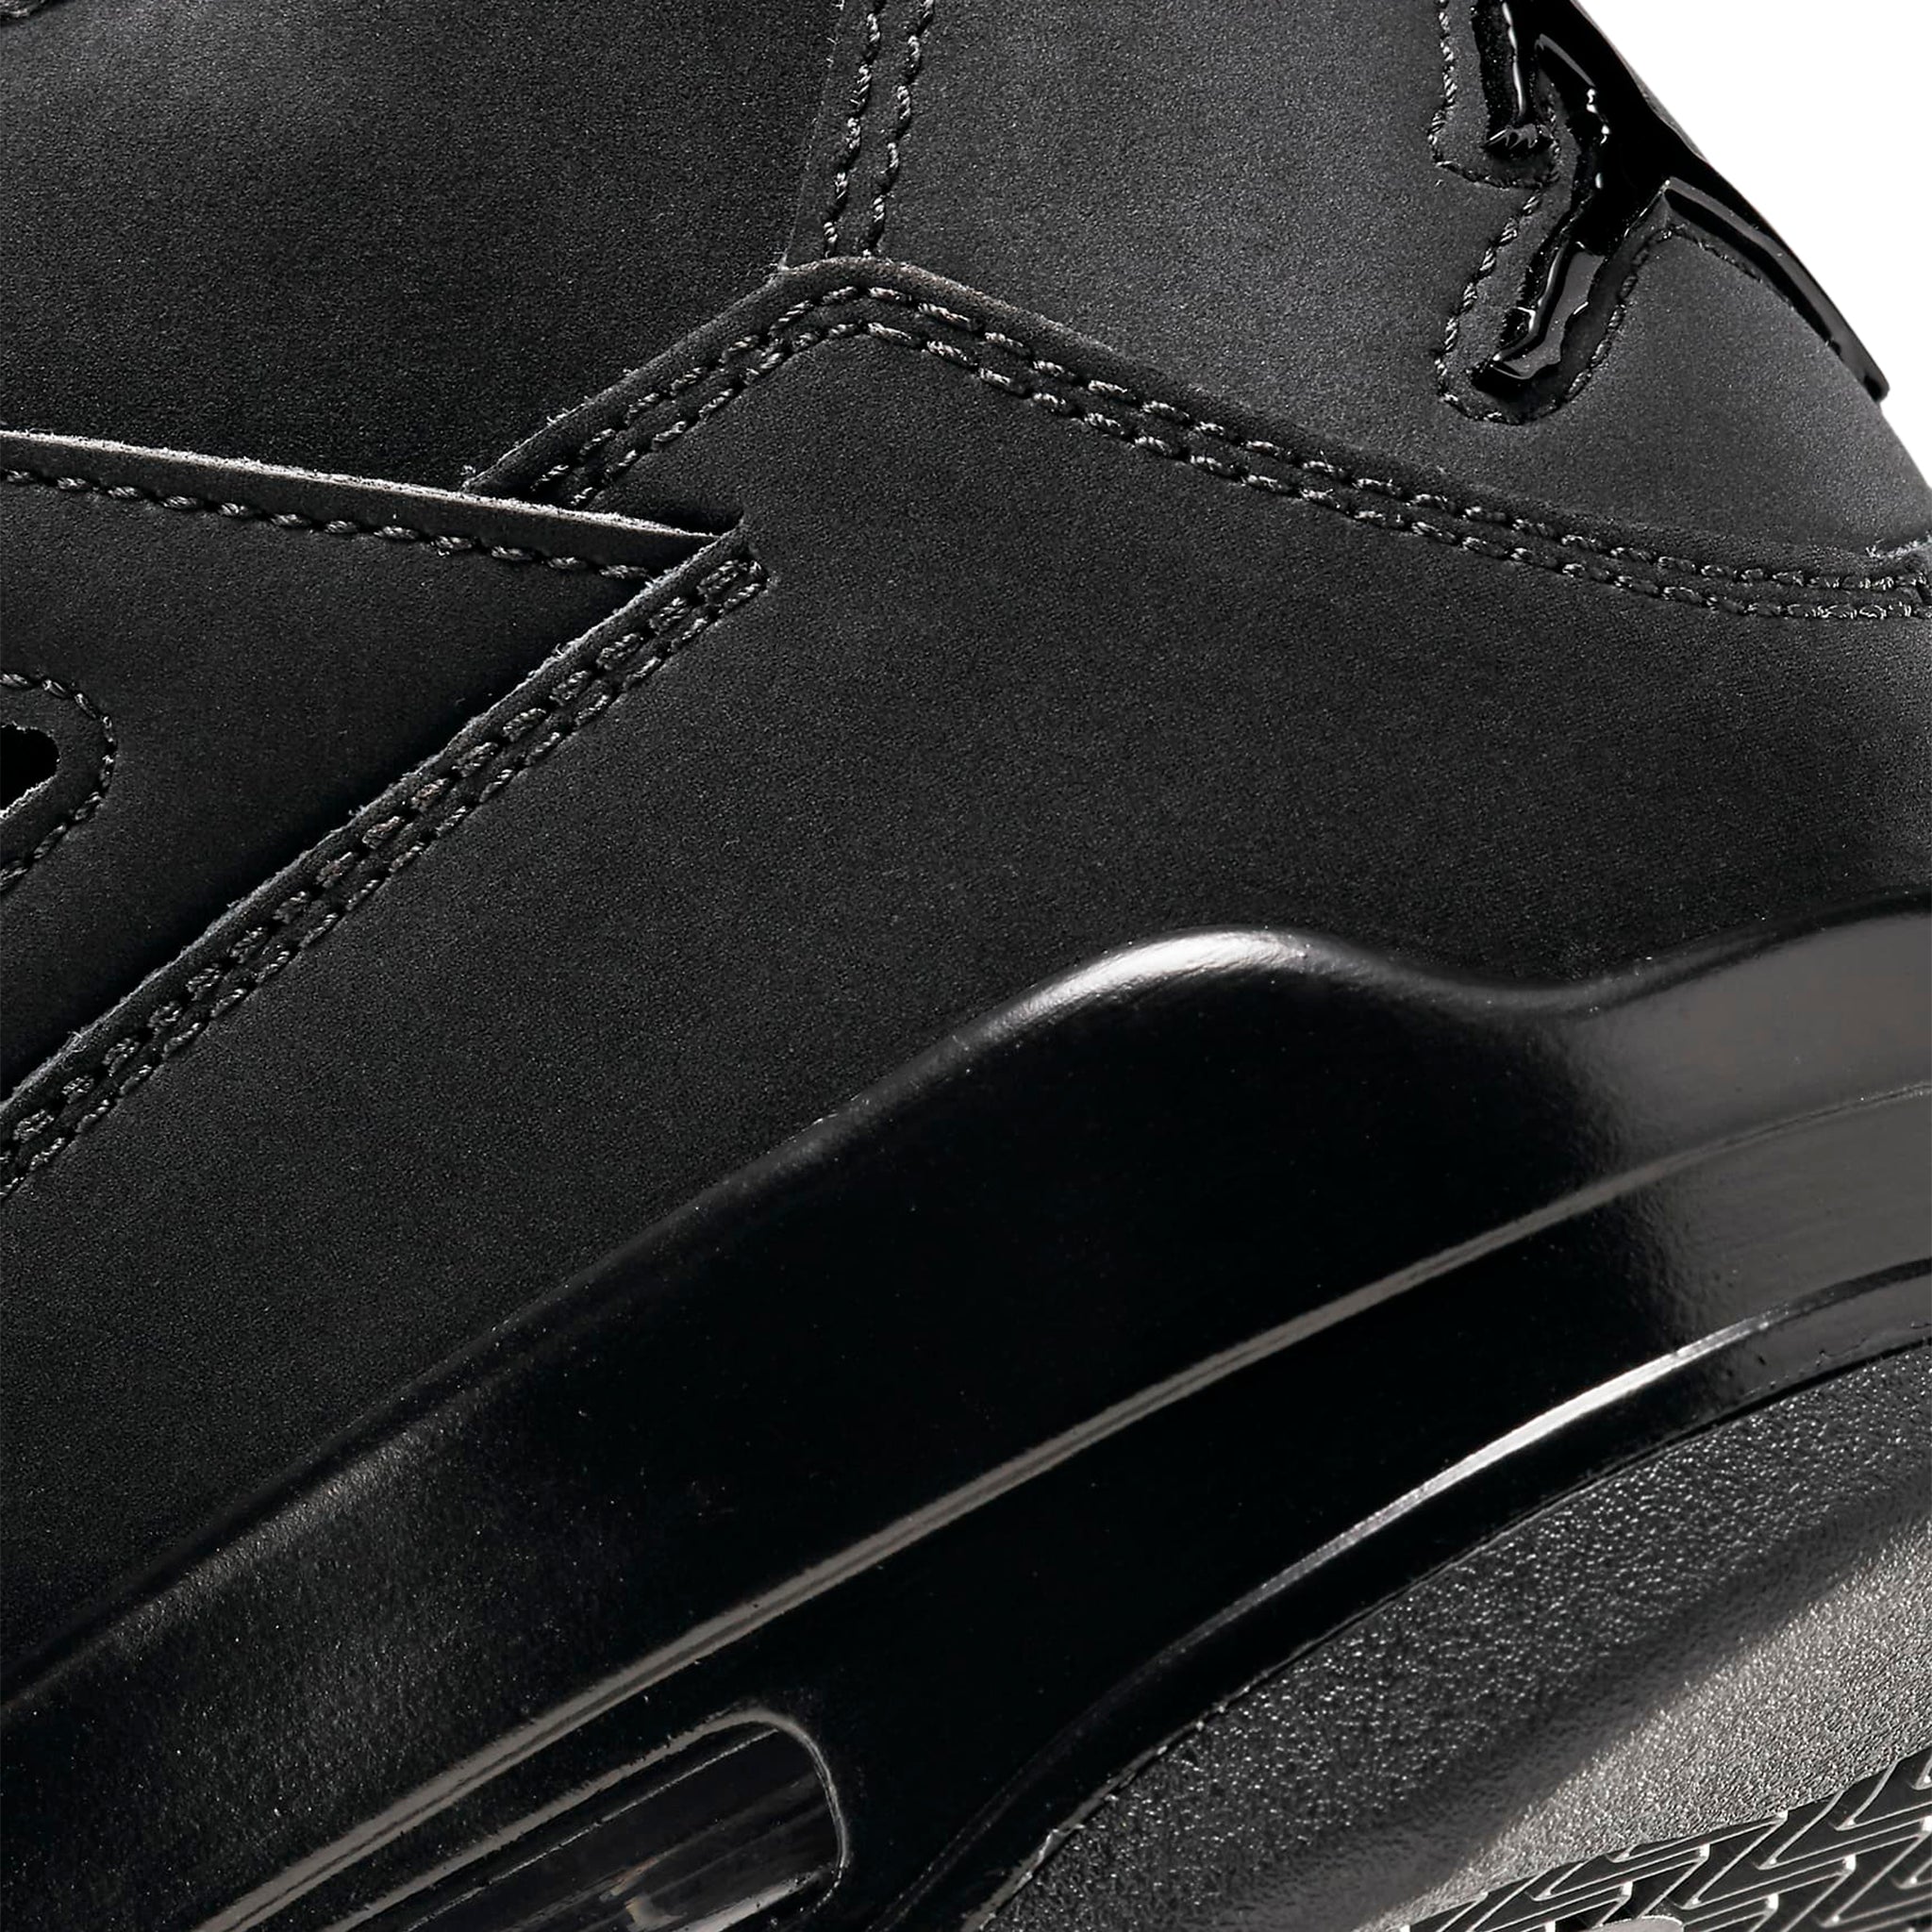 Heel view of Air Jordan 4 Retro Black Cat (2020) CU1110-010